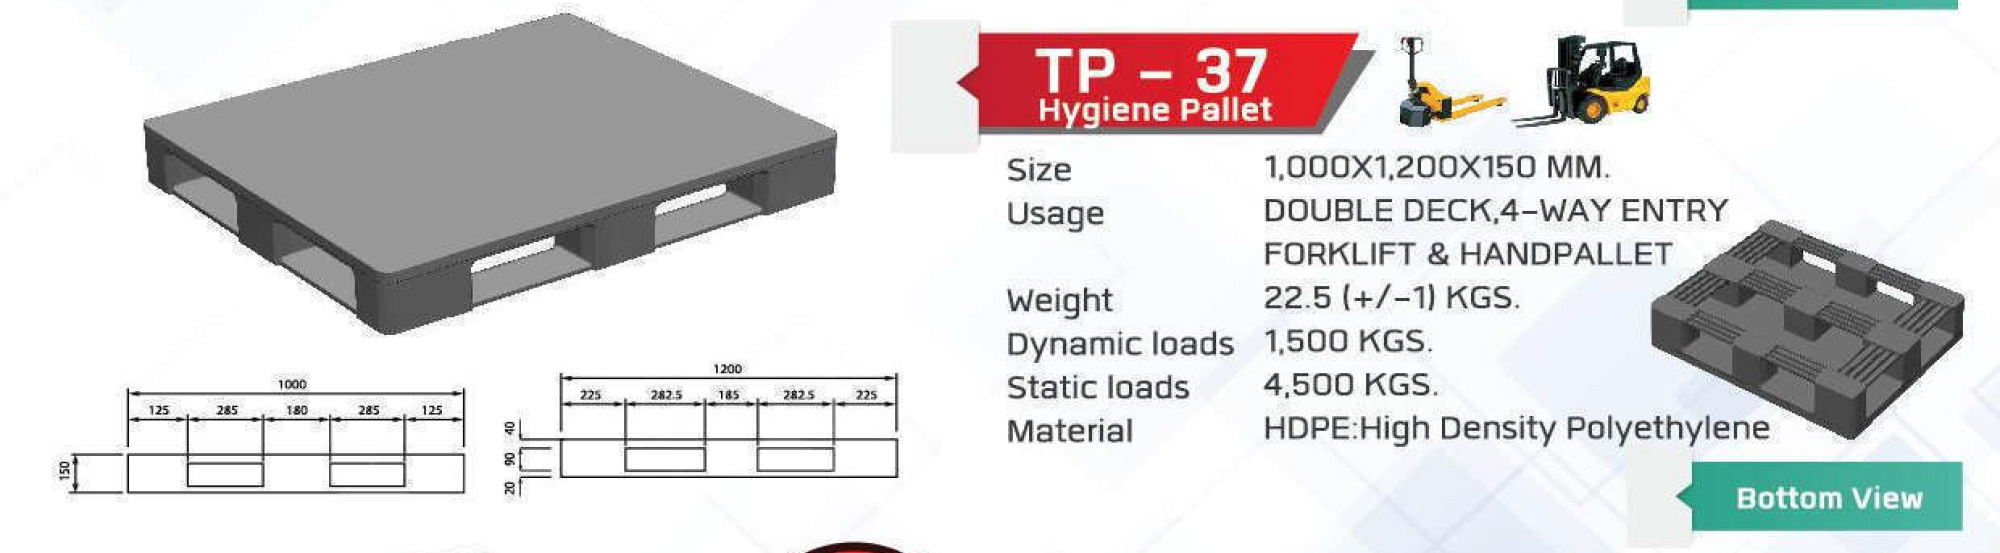 Non-Reversible-pallet-TP-37